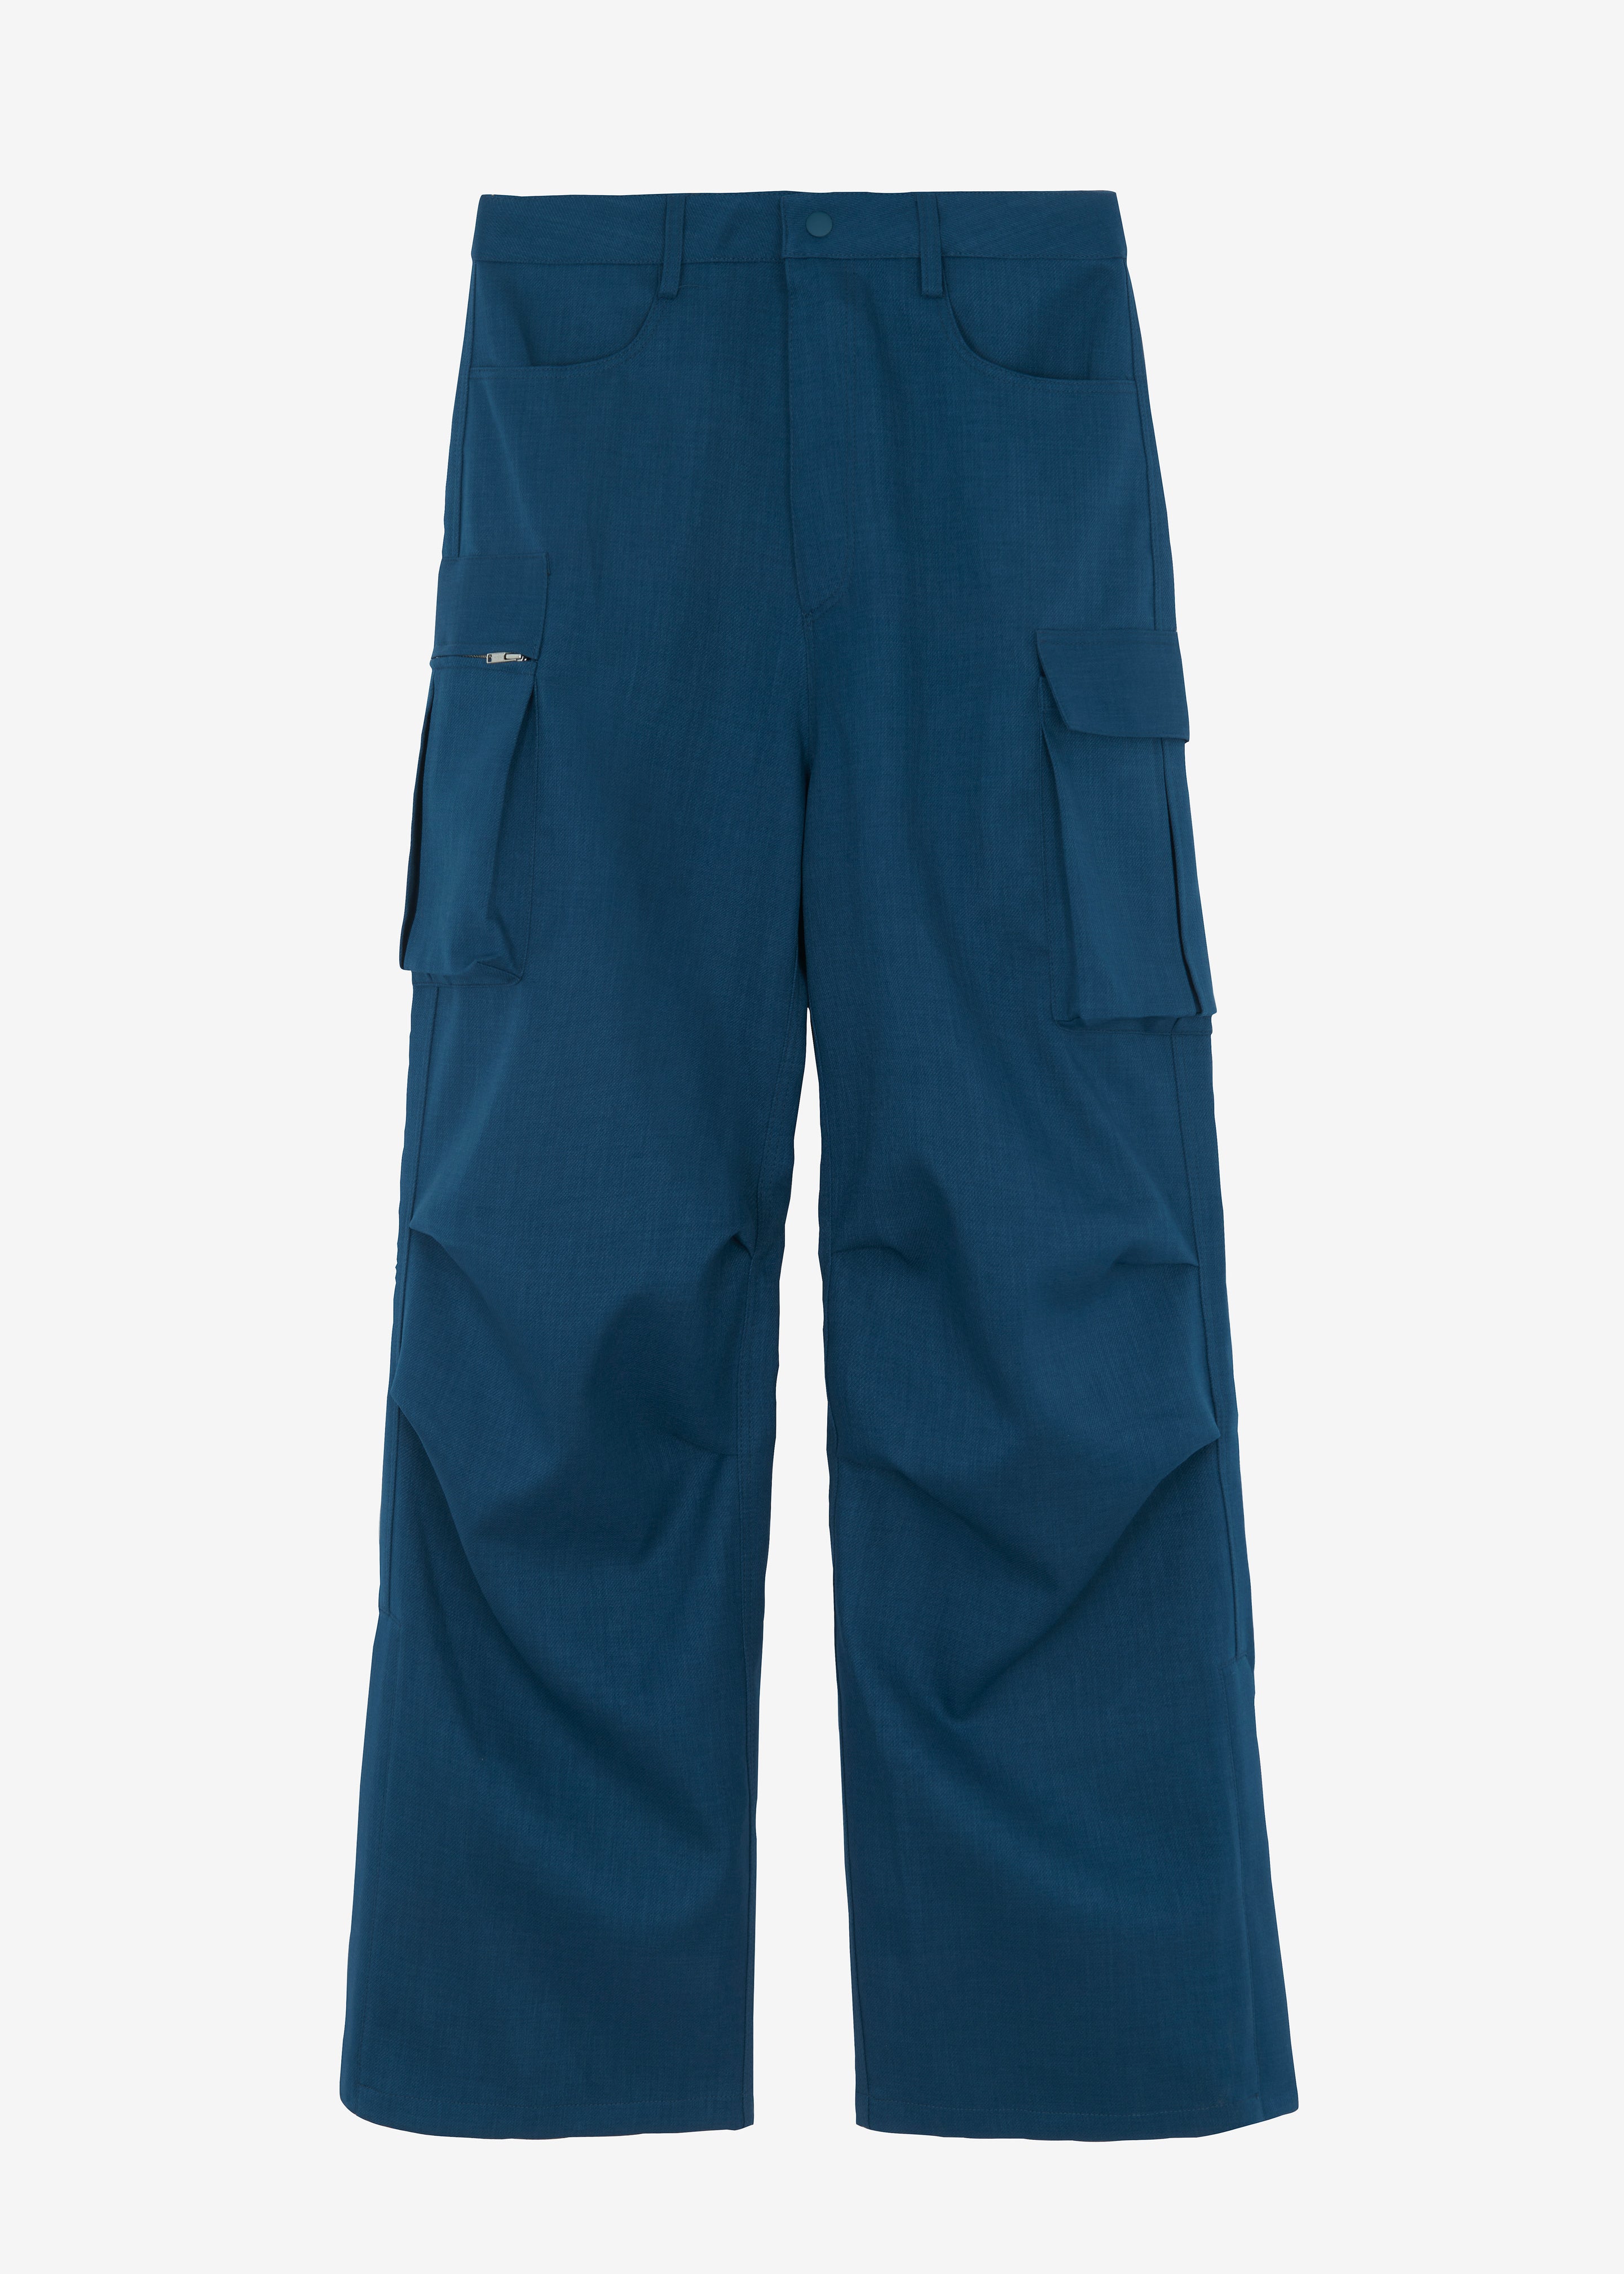 Men Cargo Work Trousers Falcon Navy Blue Heavy Duty & Knee Pad Pockets  LOT-WWFAC | eBay